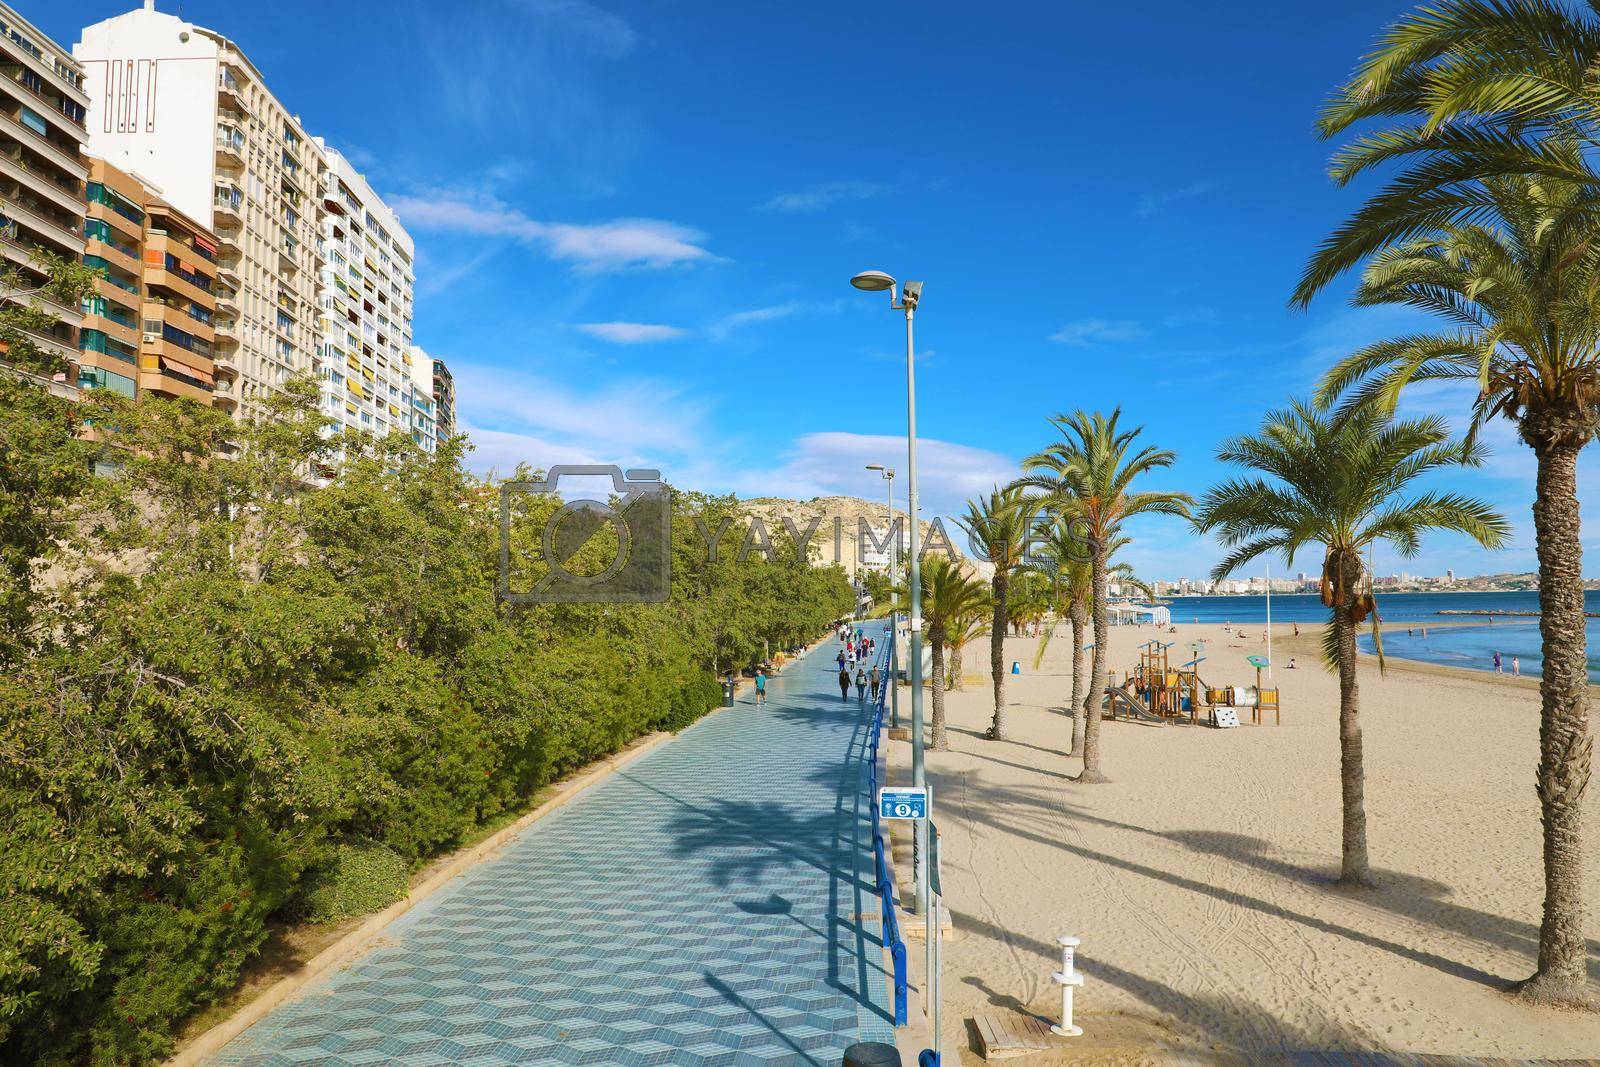 ALICANTE, SPAIN - NOVEMBER 29, 2019: Alicante promenade Paseo de Gomiz with Playa del Postiguet beach, Spain